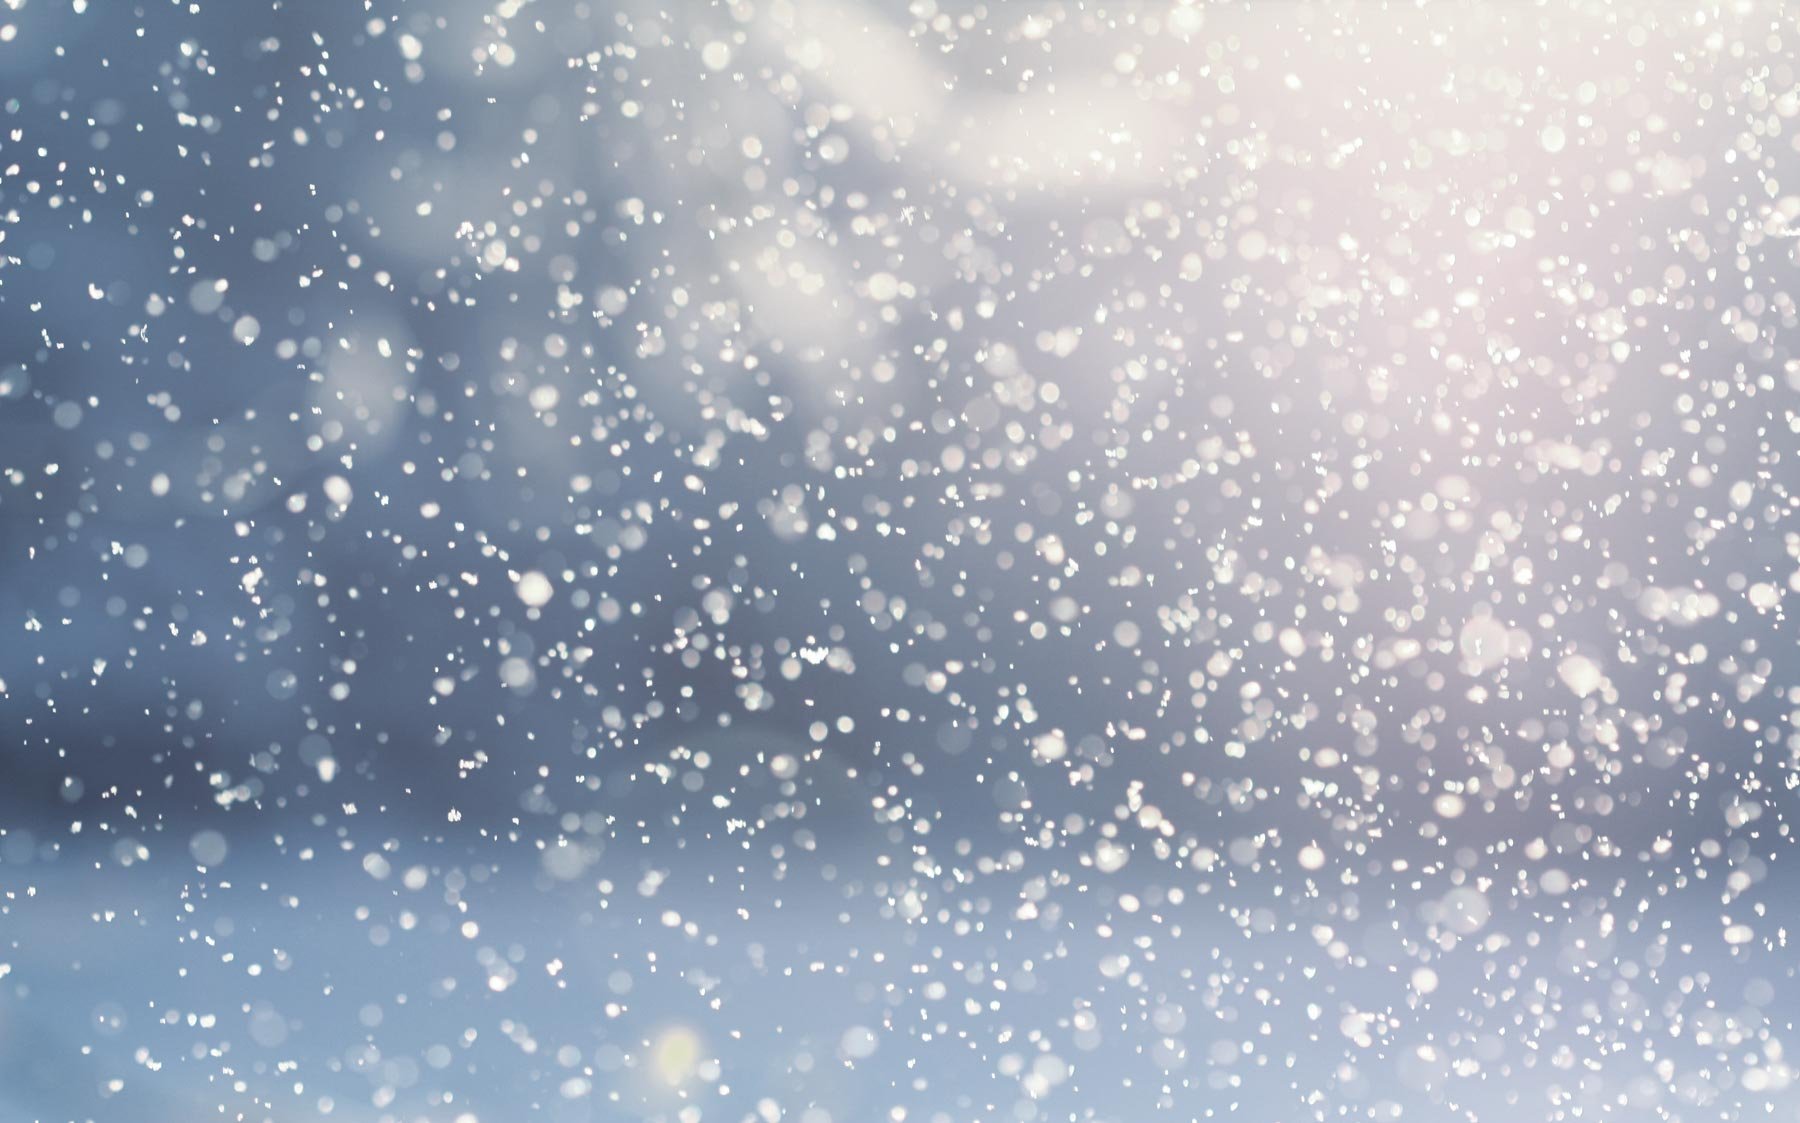 Снег прогнозируют синоптики 16 ноября на севере Казахстана